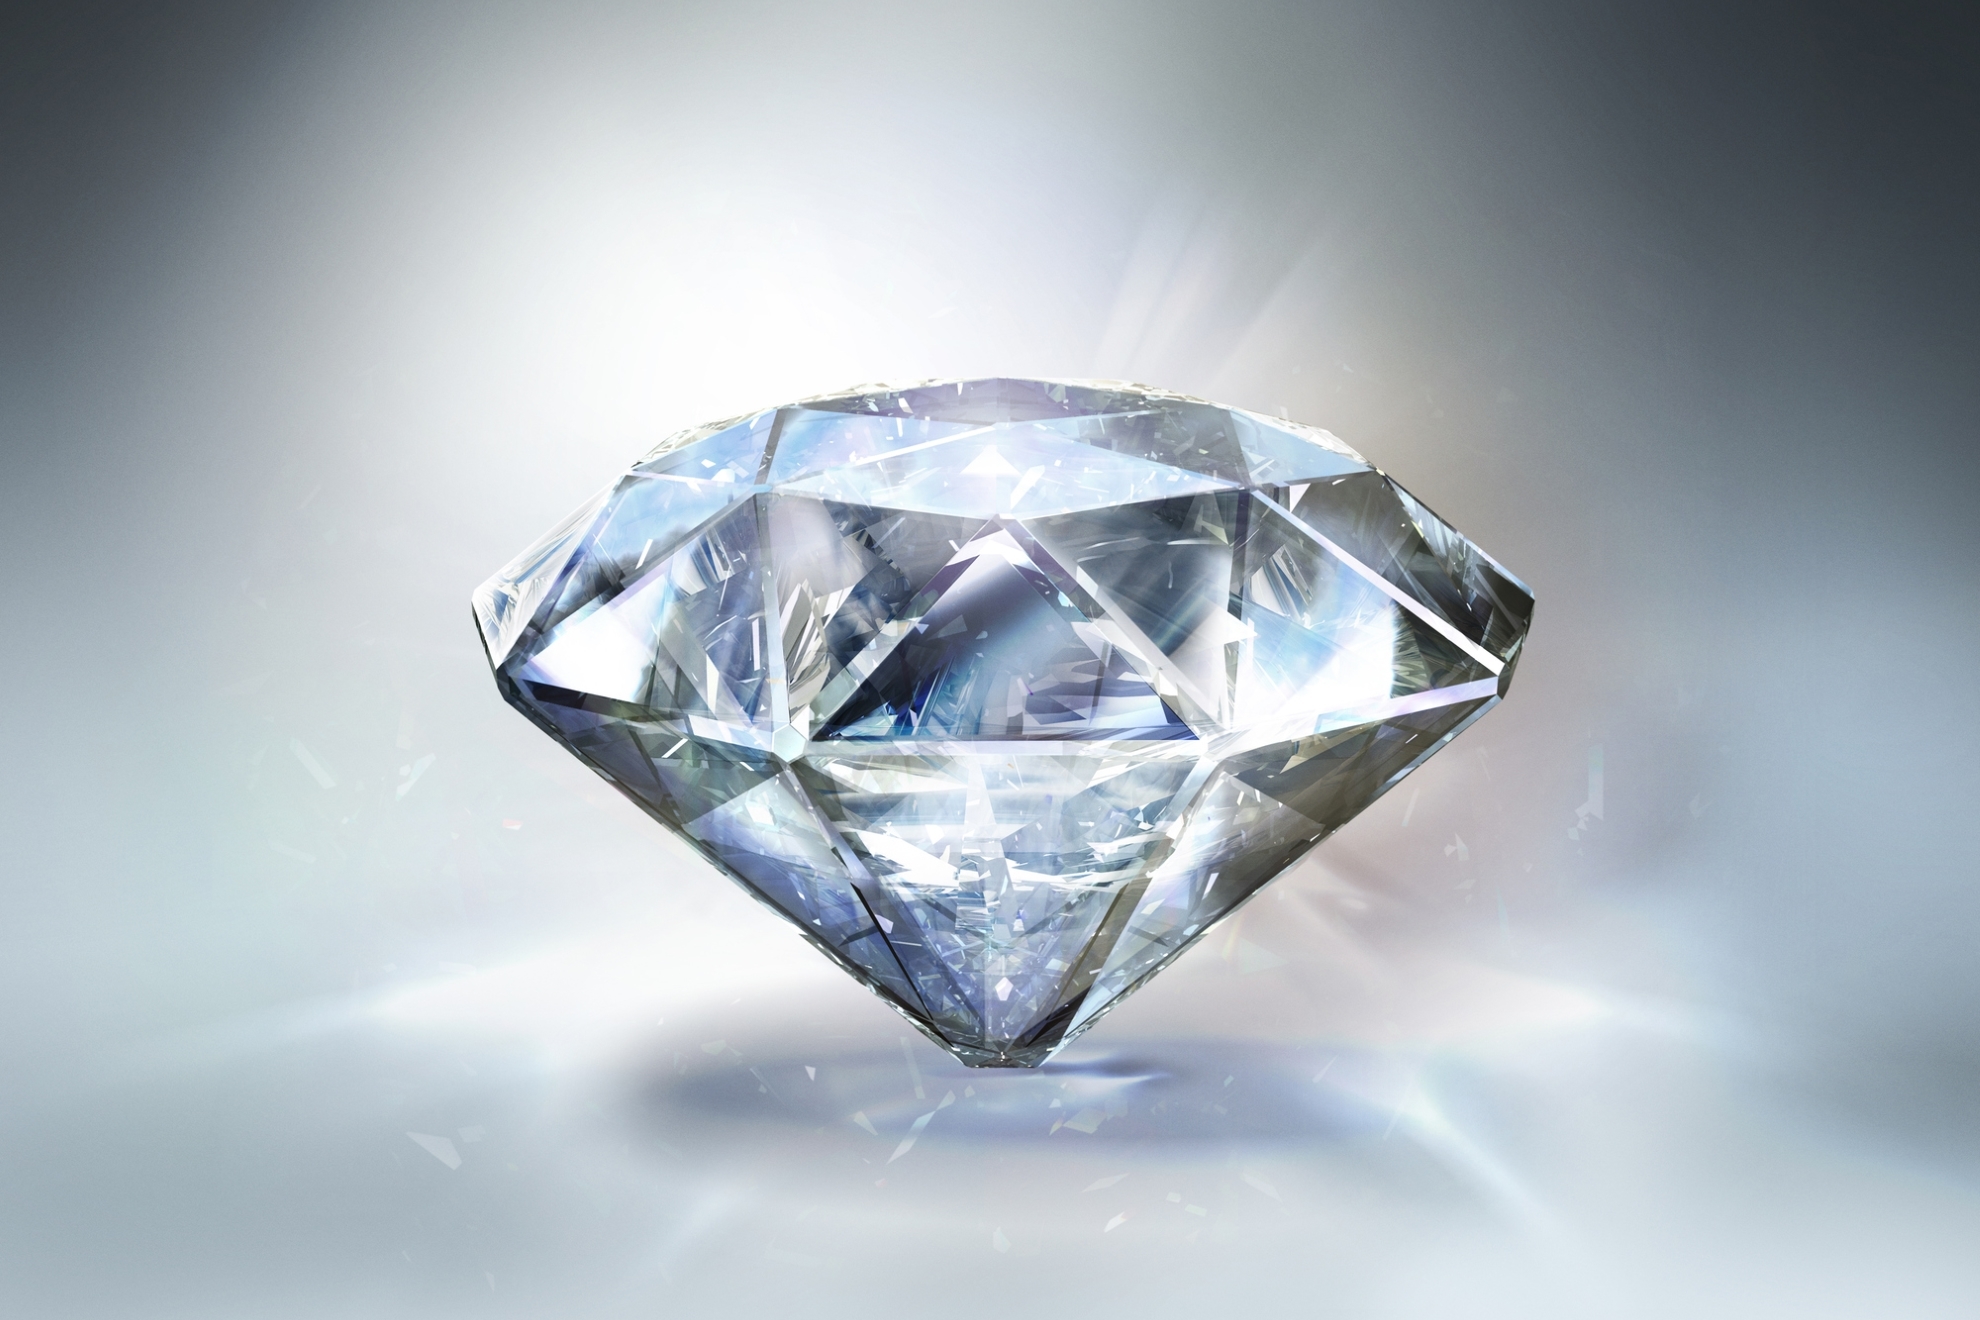 Un fallo de Cartier permite comprar pendientes de diamantes por 13 euros